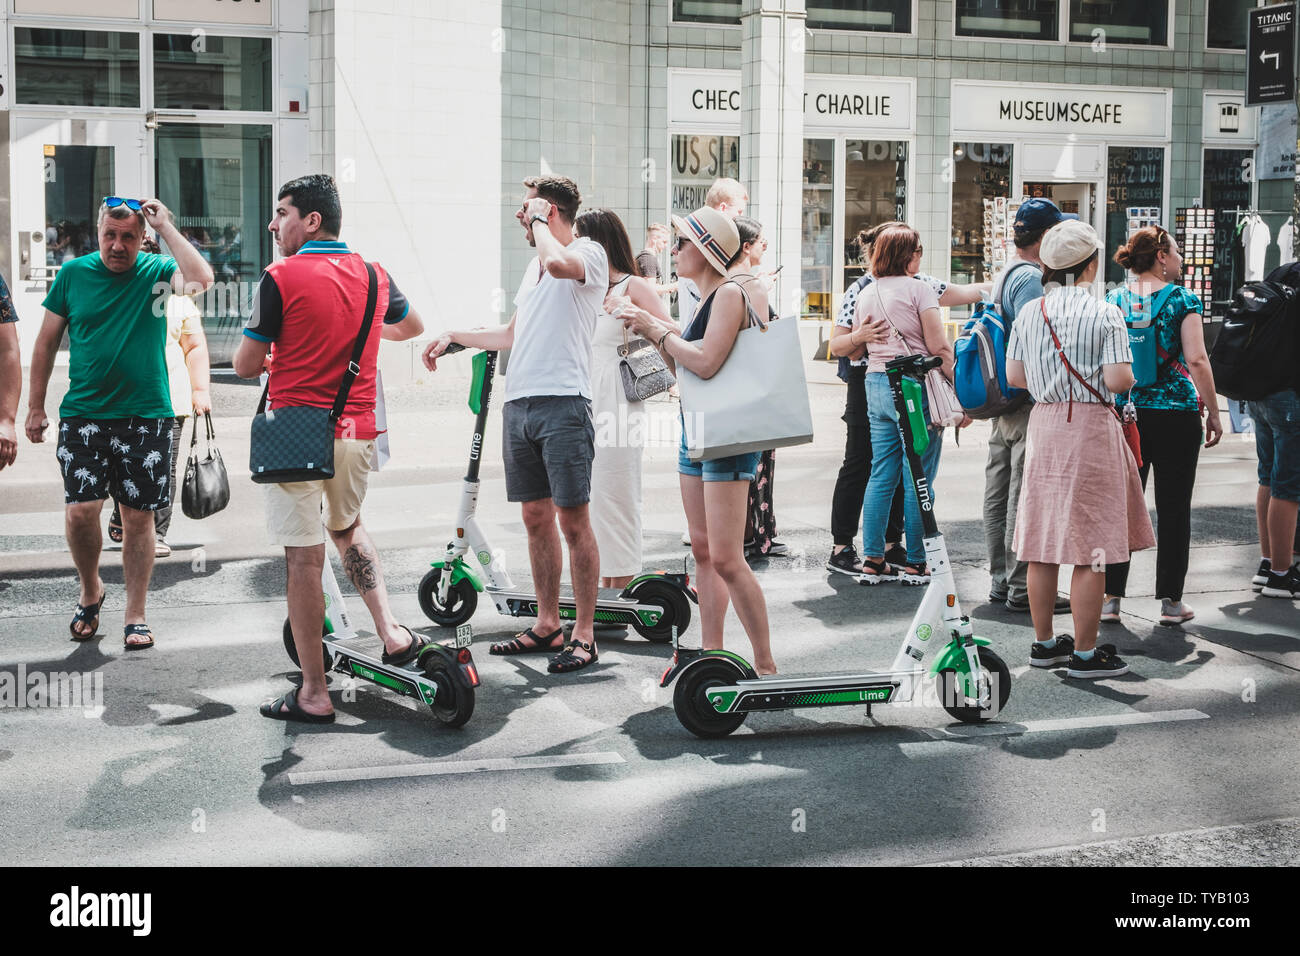 Berlino, Germania - Giugno, 2019: gruppo turistico equitazione scooter elettrico , escooter o e-scooter sulla strada di Berlino, Germania Foto Stock